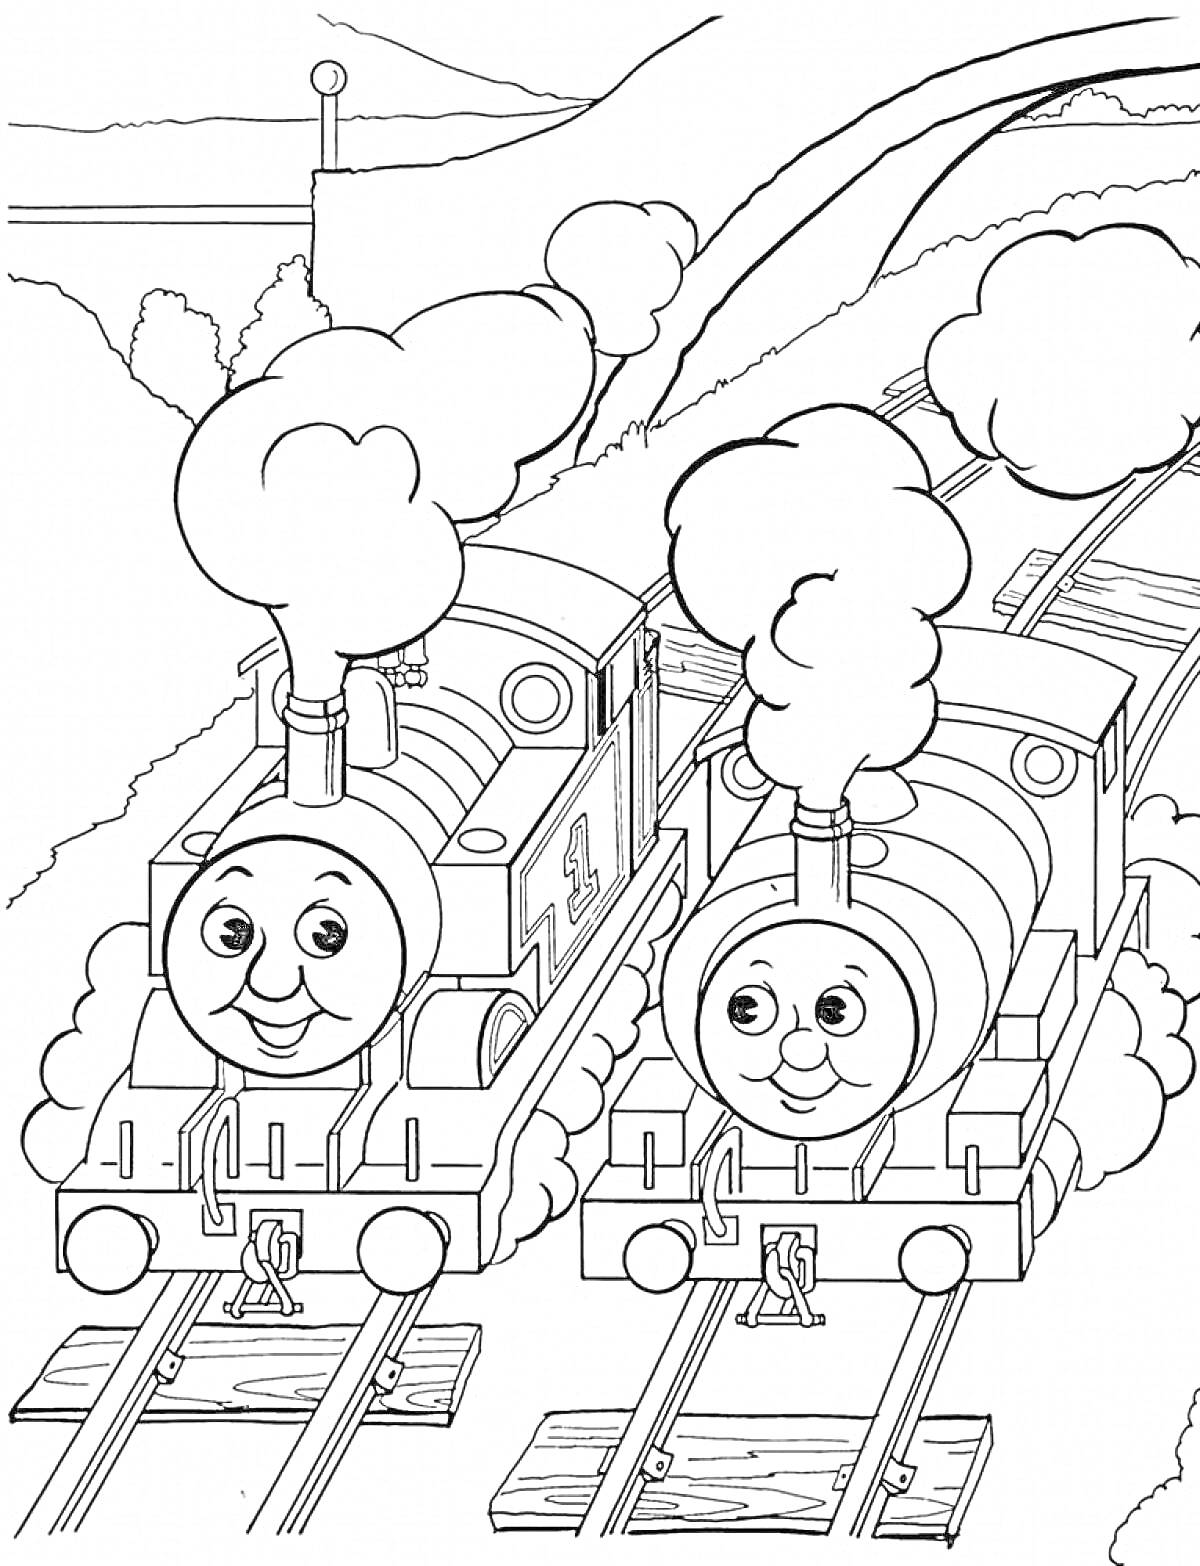 Паровозик Томас и его друг на железнодорожных путях, с дымом из труб и деревьями на заднем плане